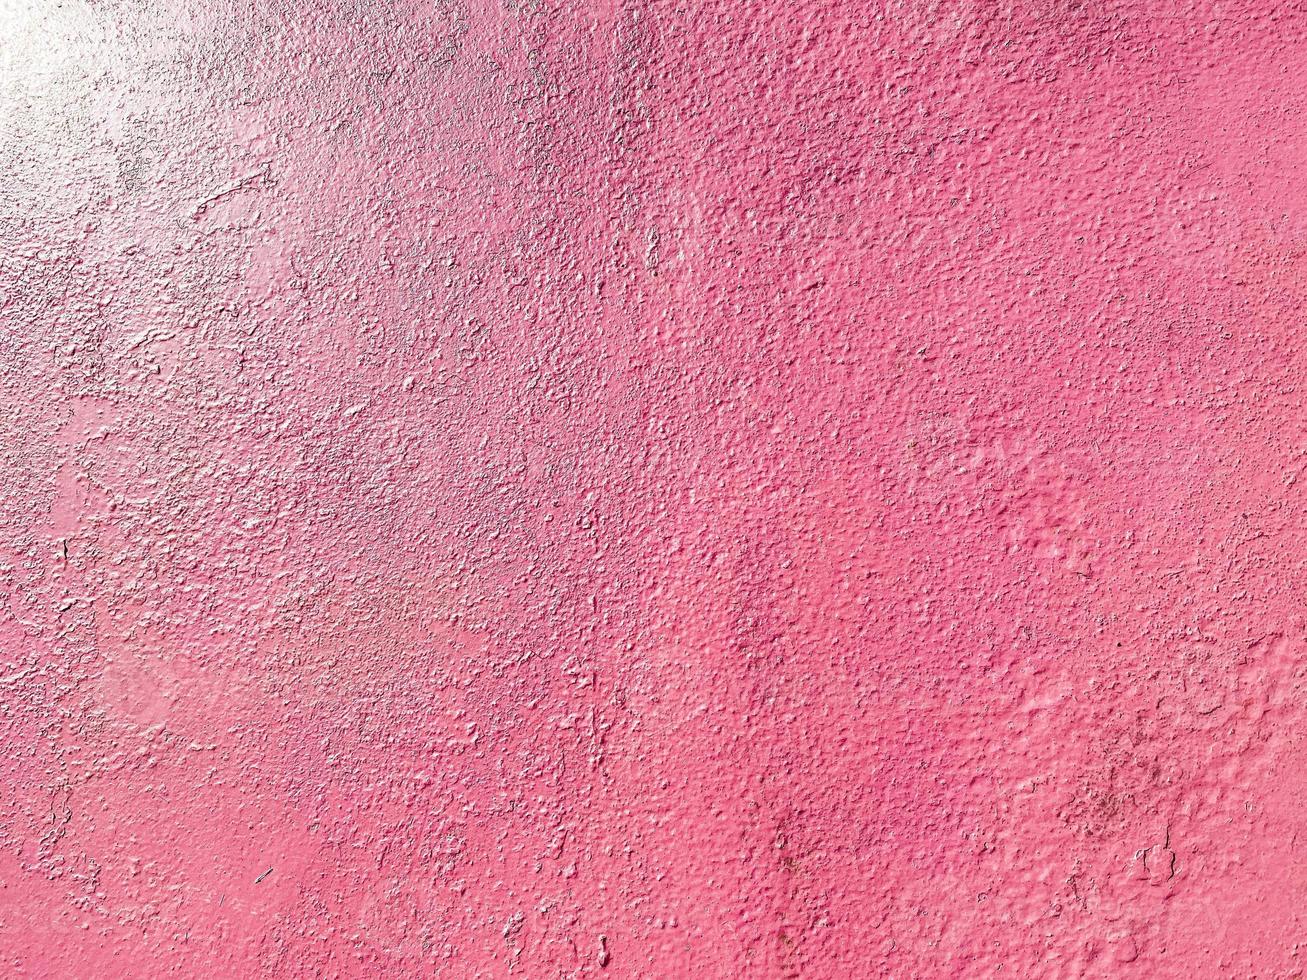 textura roja rosada de una antigua pared de hierro metálico pintada con grietas y abrasiones. el fondo. textura foto